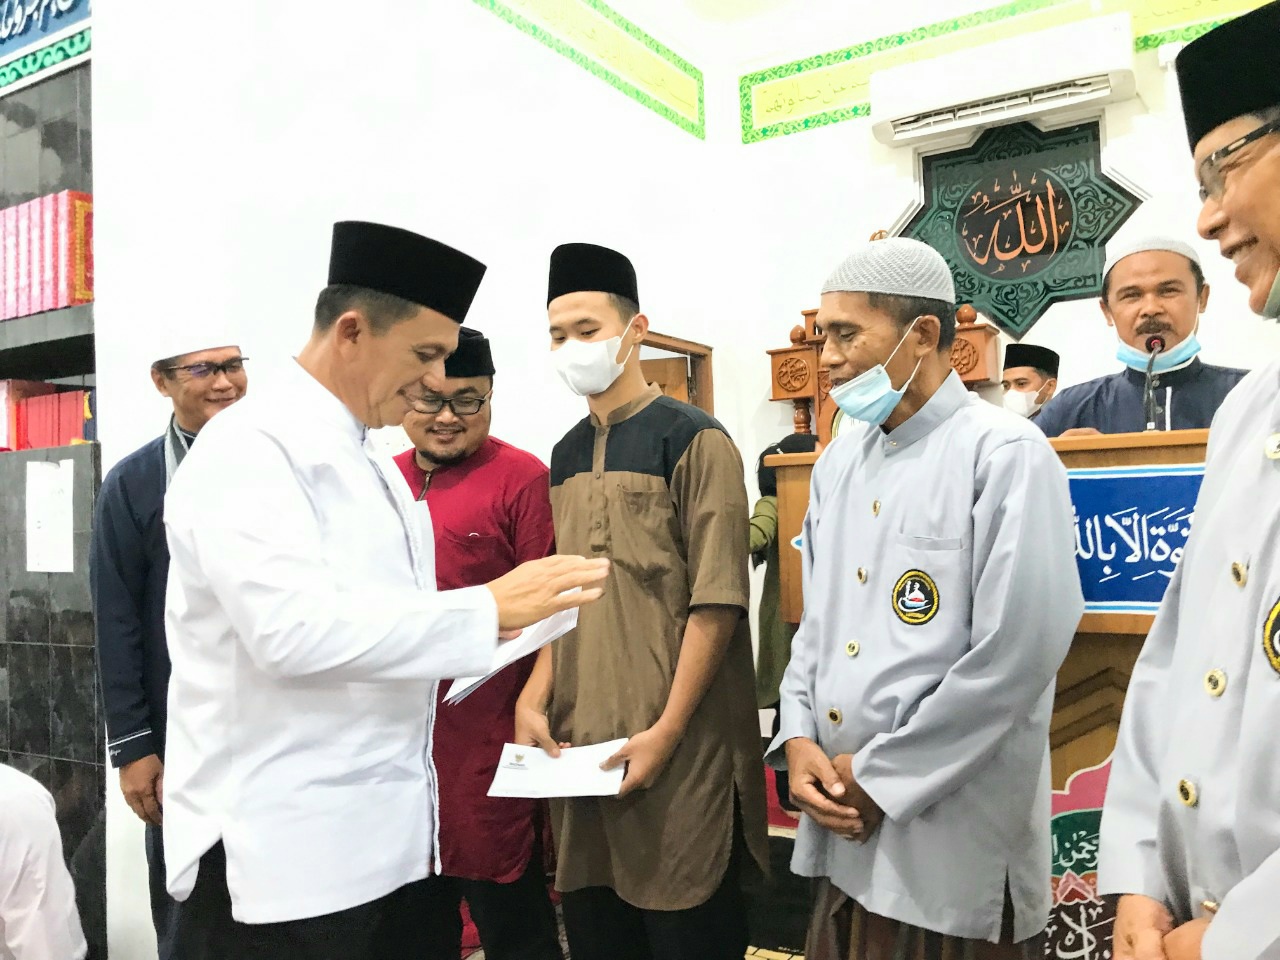 Safari Ramadhan di Masjid Hajar Aswad, Gubernur Ansar Sampaikan Sejumlah Program Pemerintah